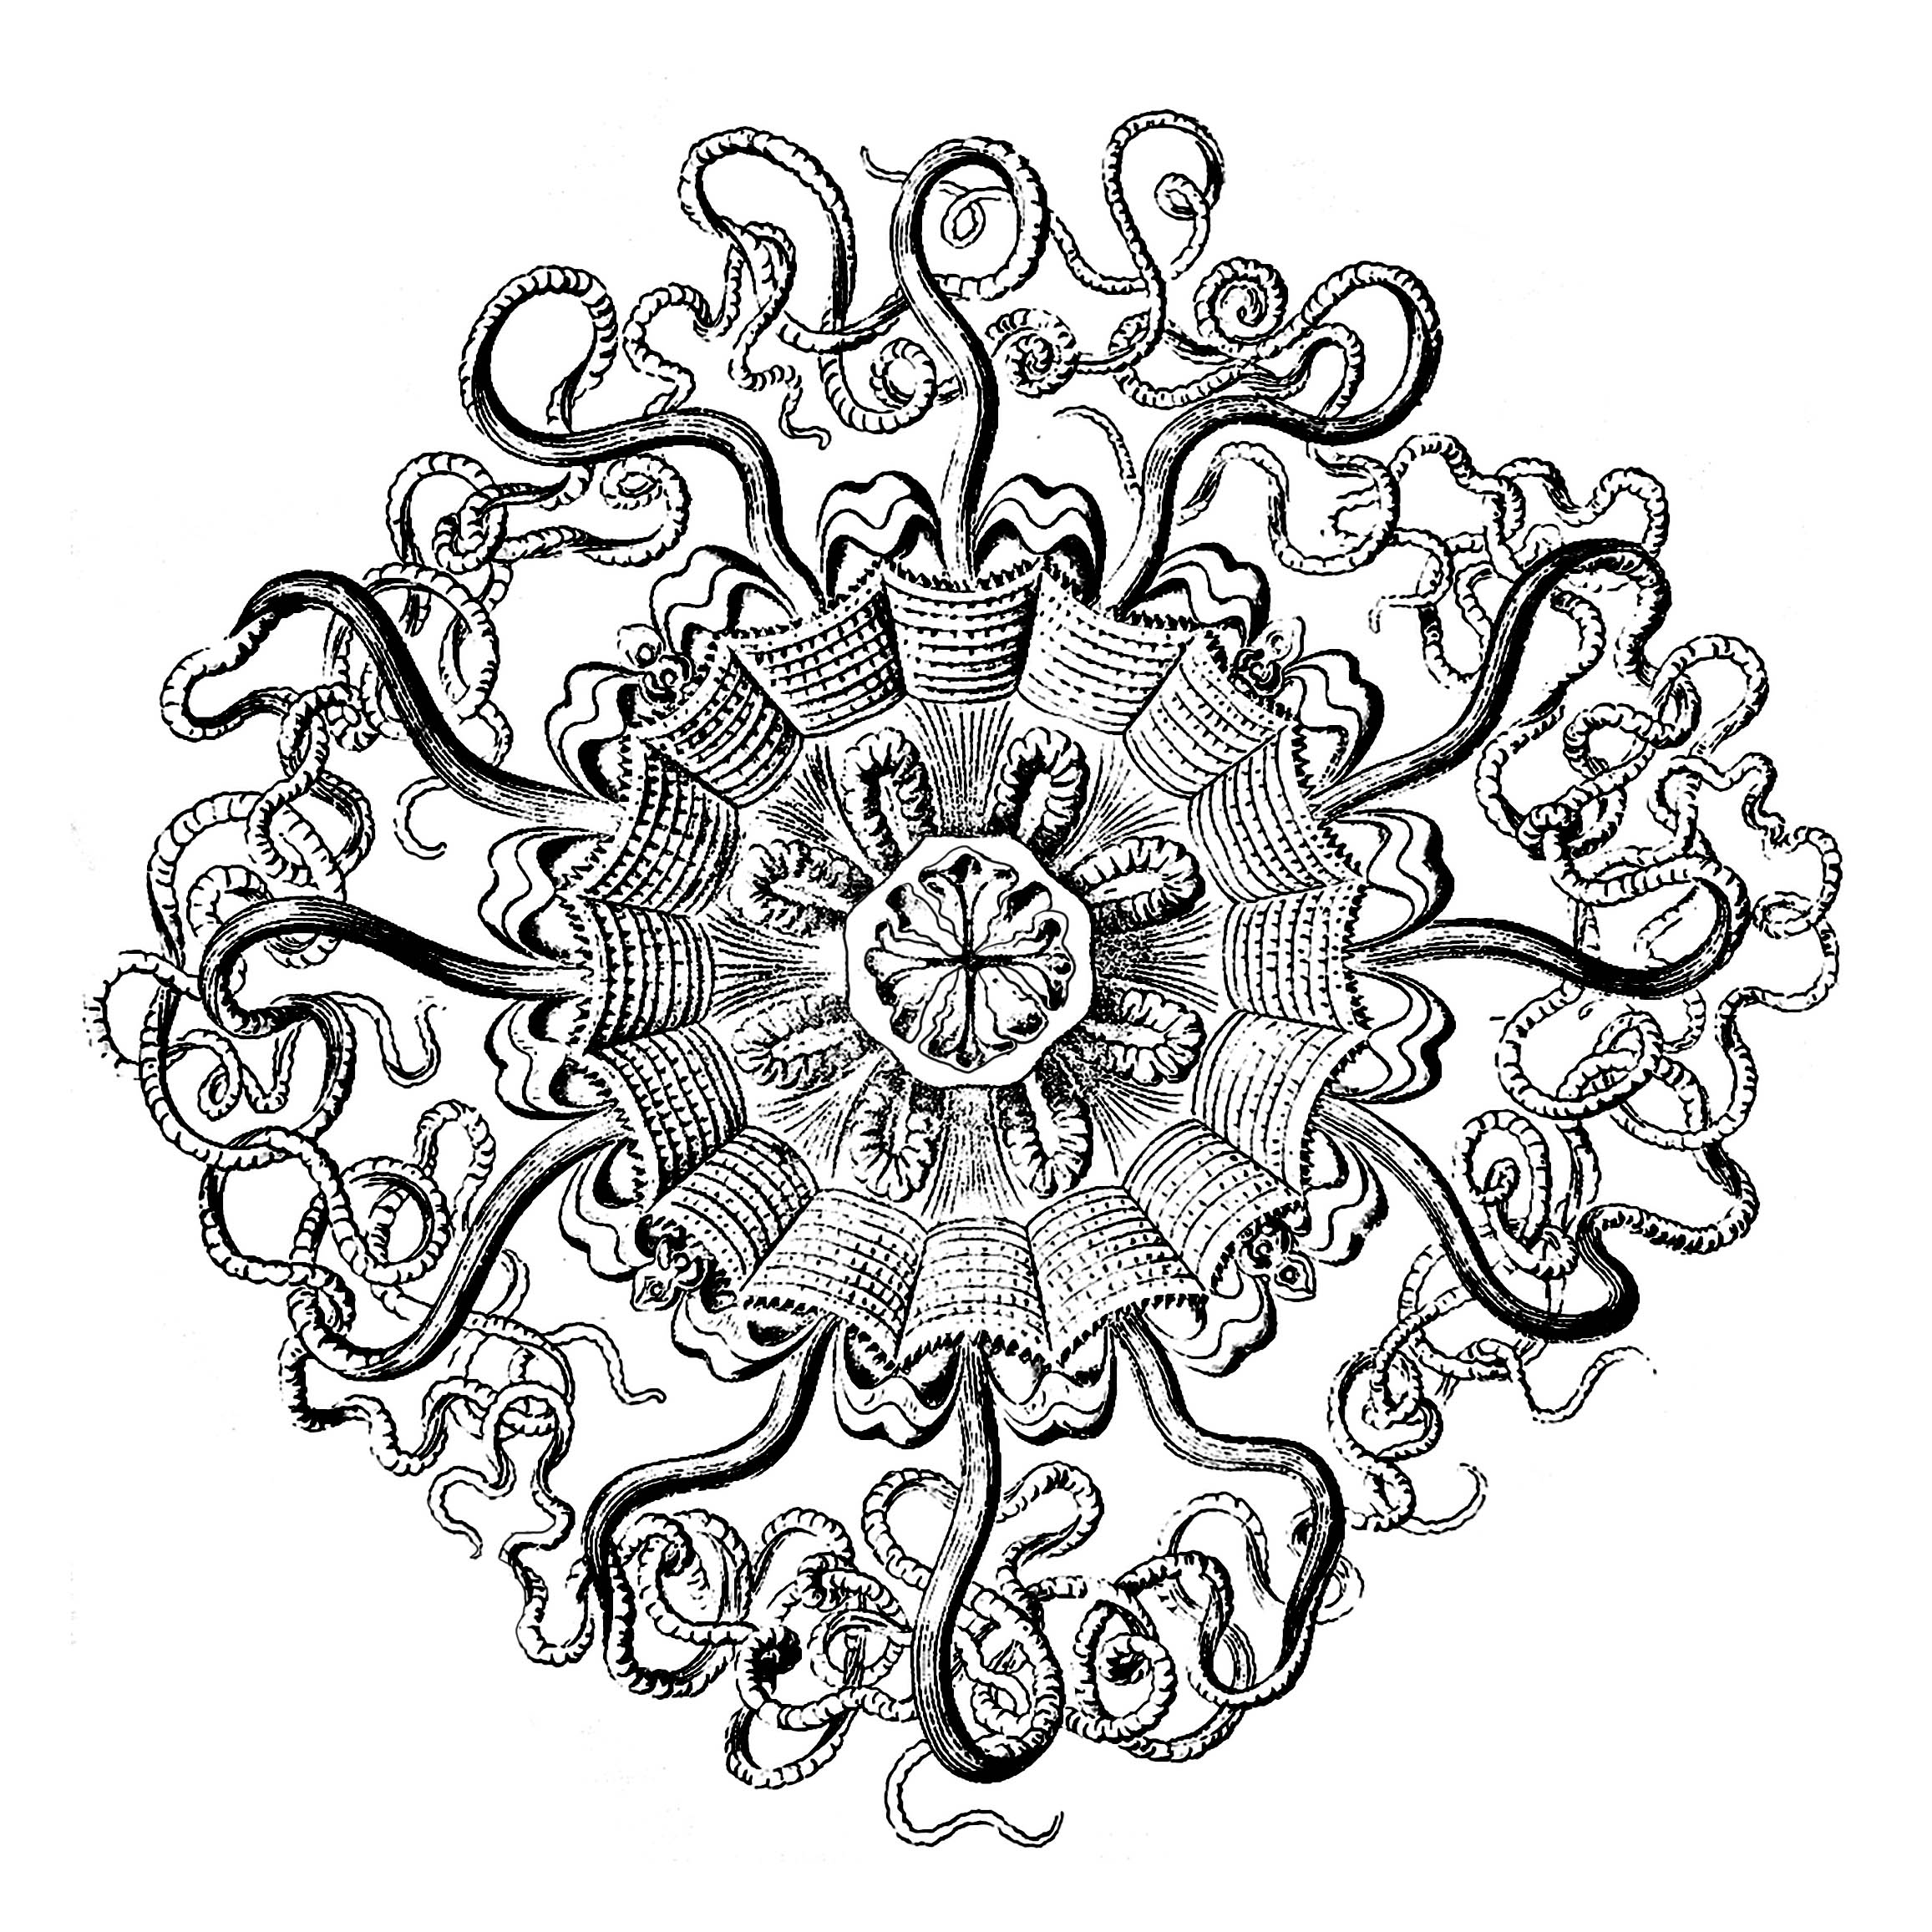 Un mandala exclusivo creado a partir de una placa anatómica de medusa del siglo XVIII (Permedusae)